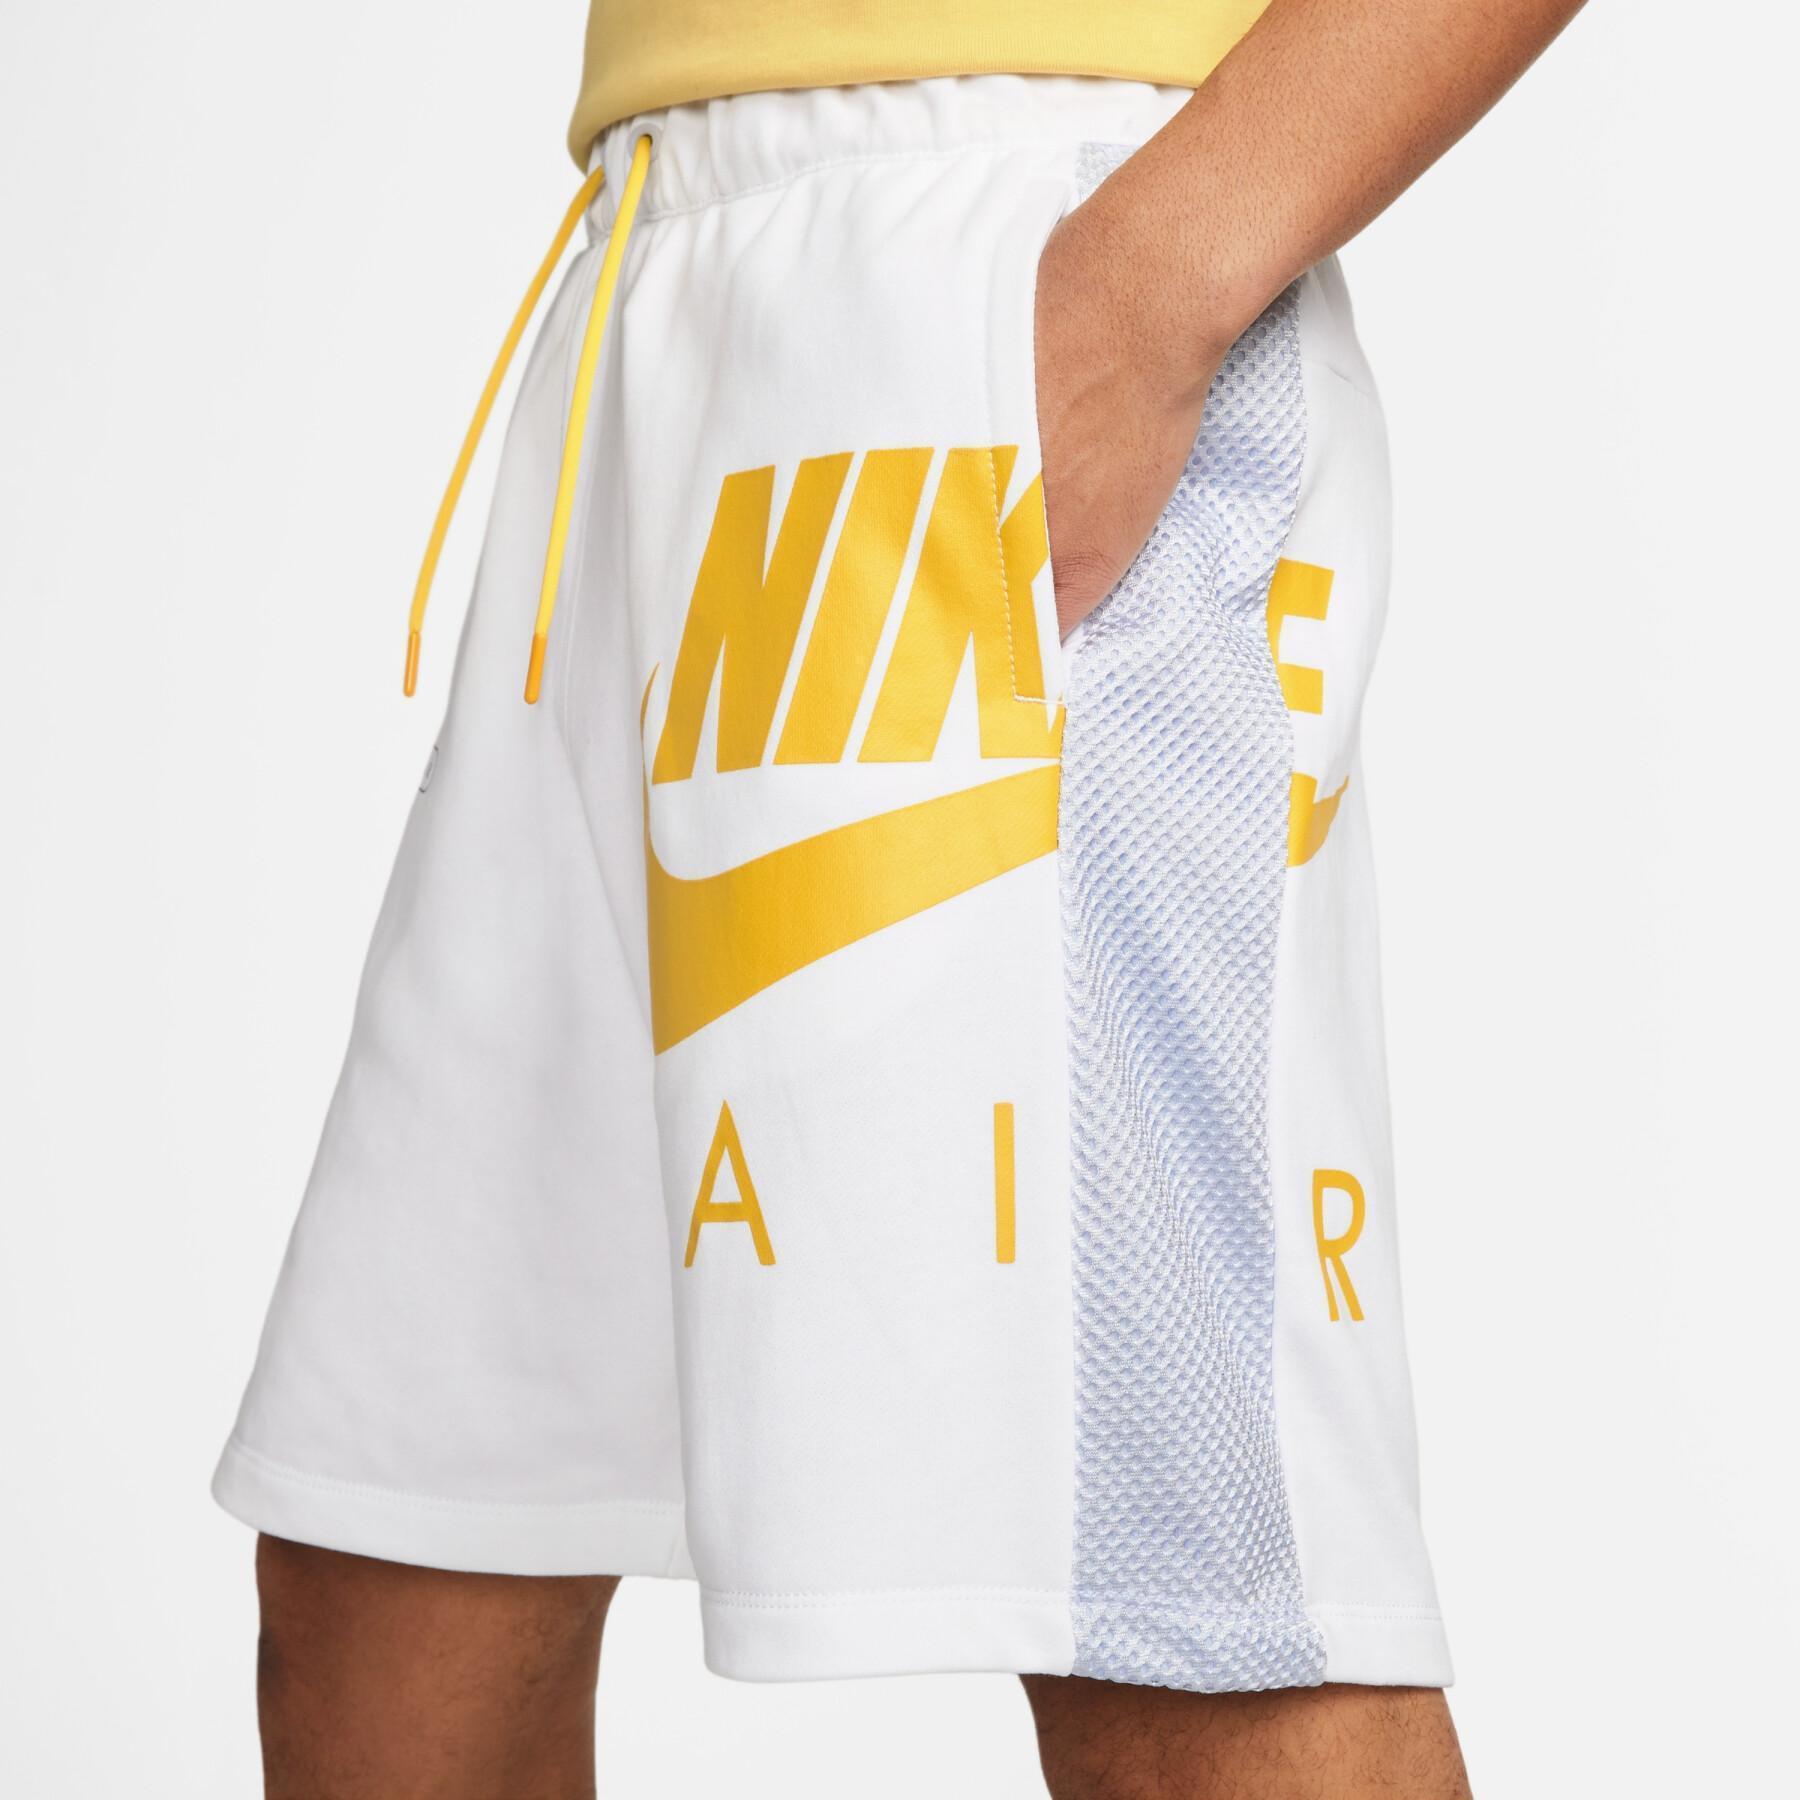 Kort Nike Air